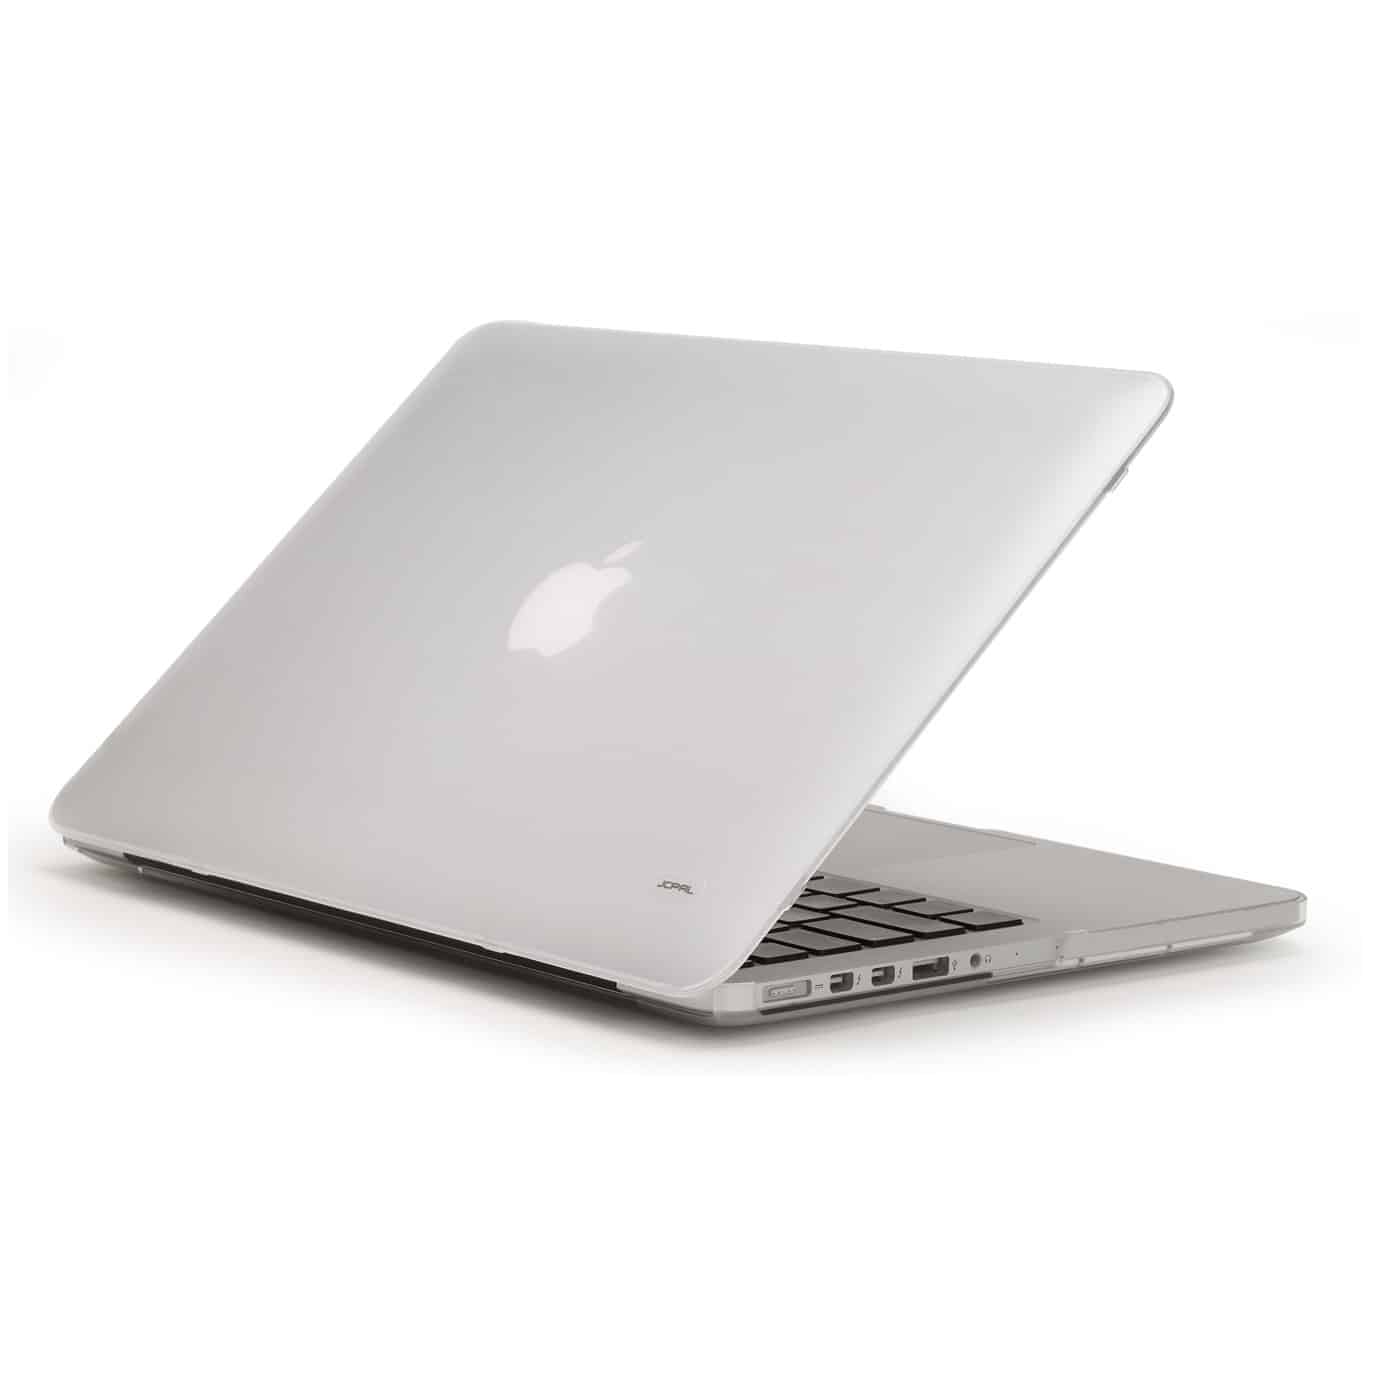 2752 - Ốp lưng MacBook Pro 15 Touch Bar JCPAL JCP2381